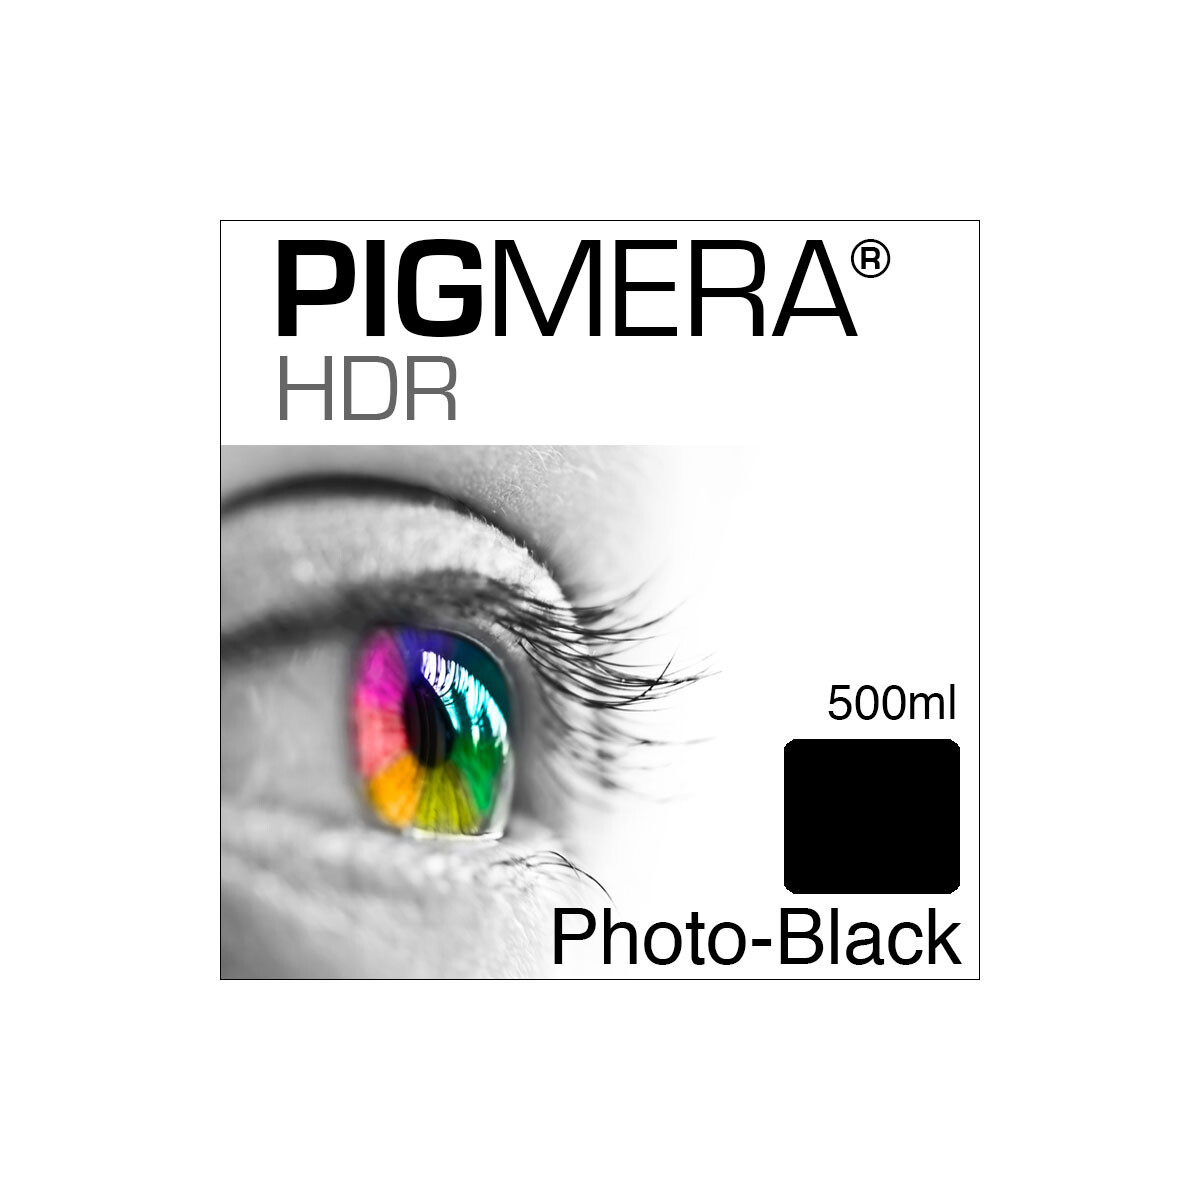 farbenwerk Pigmera HDR Flasche Photo-Black 500ml